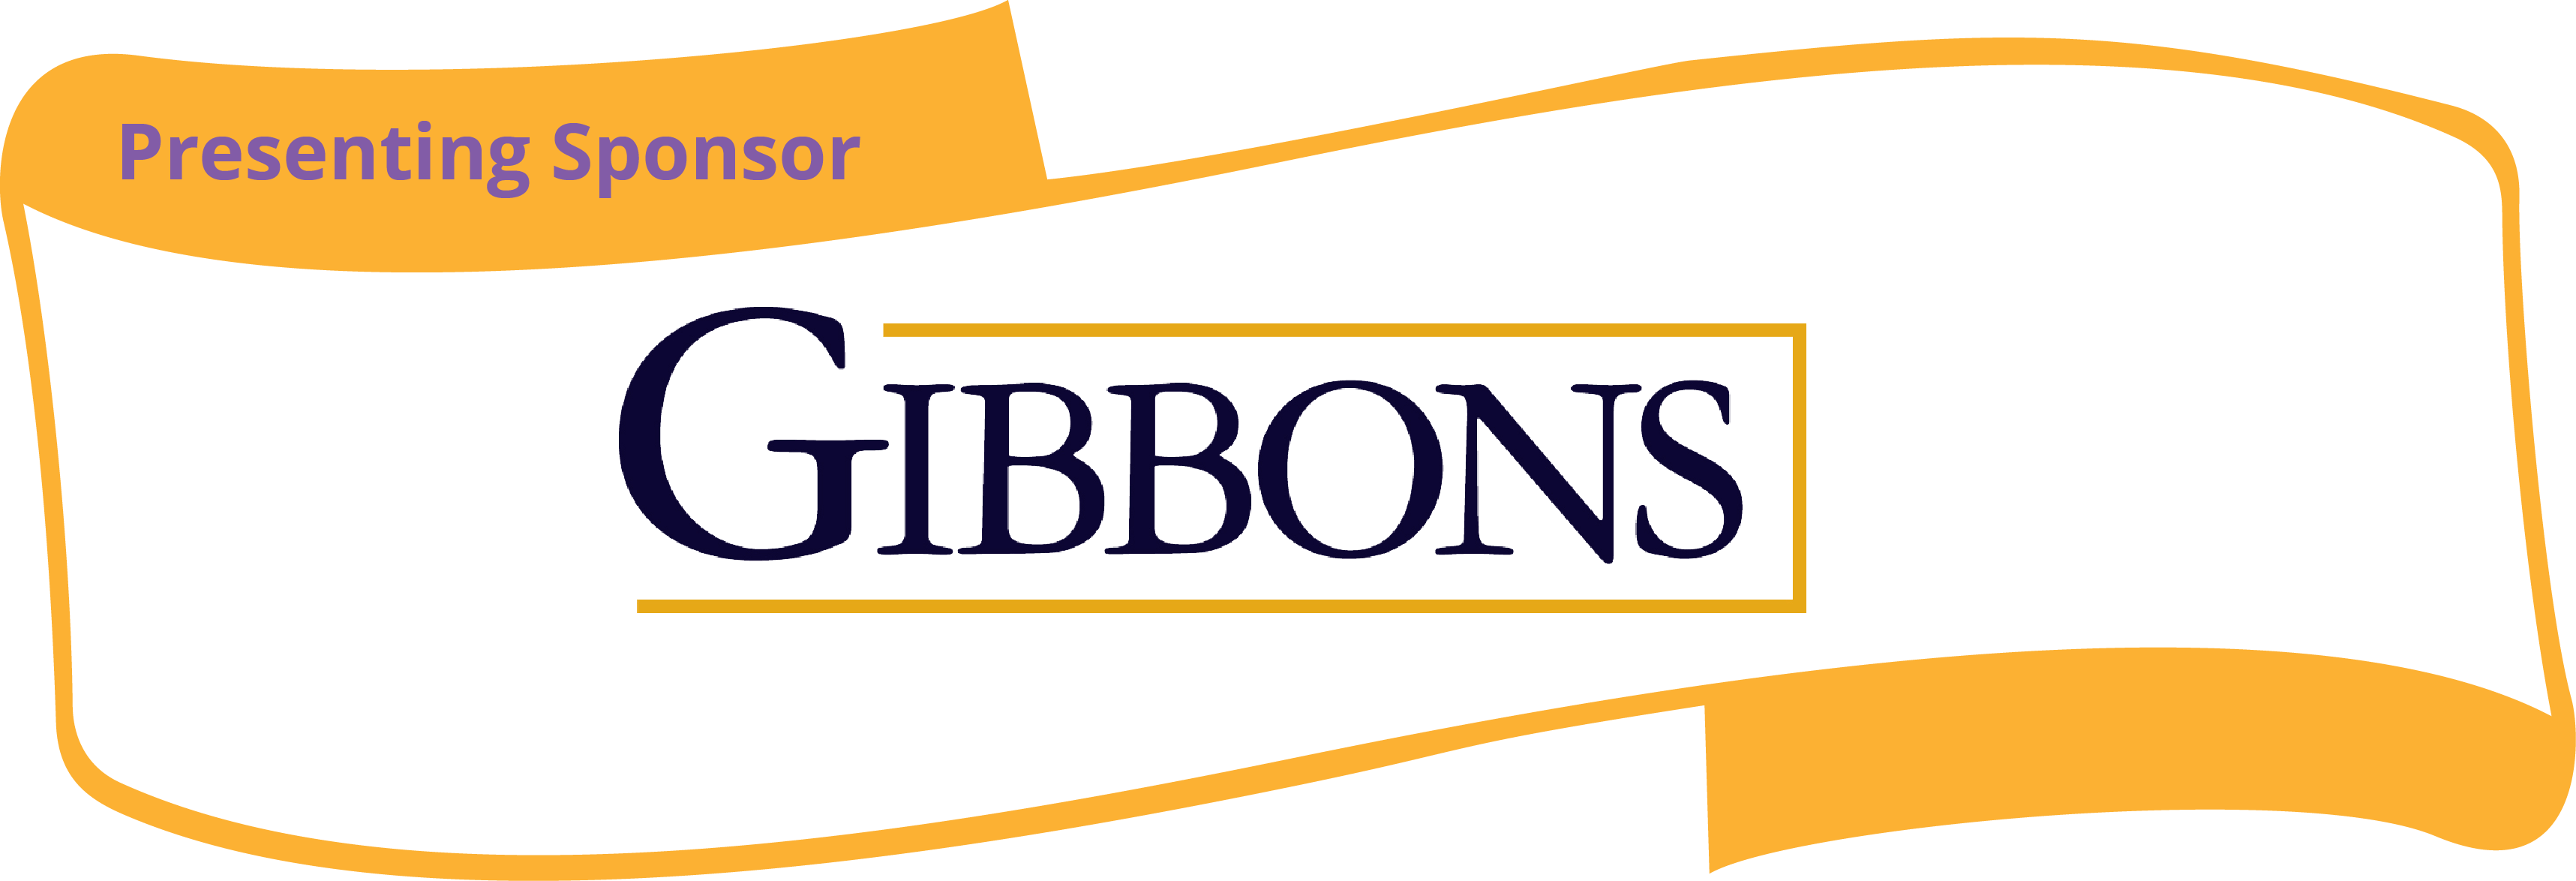 Gibbons company logo